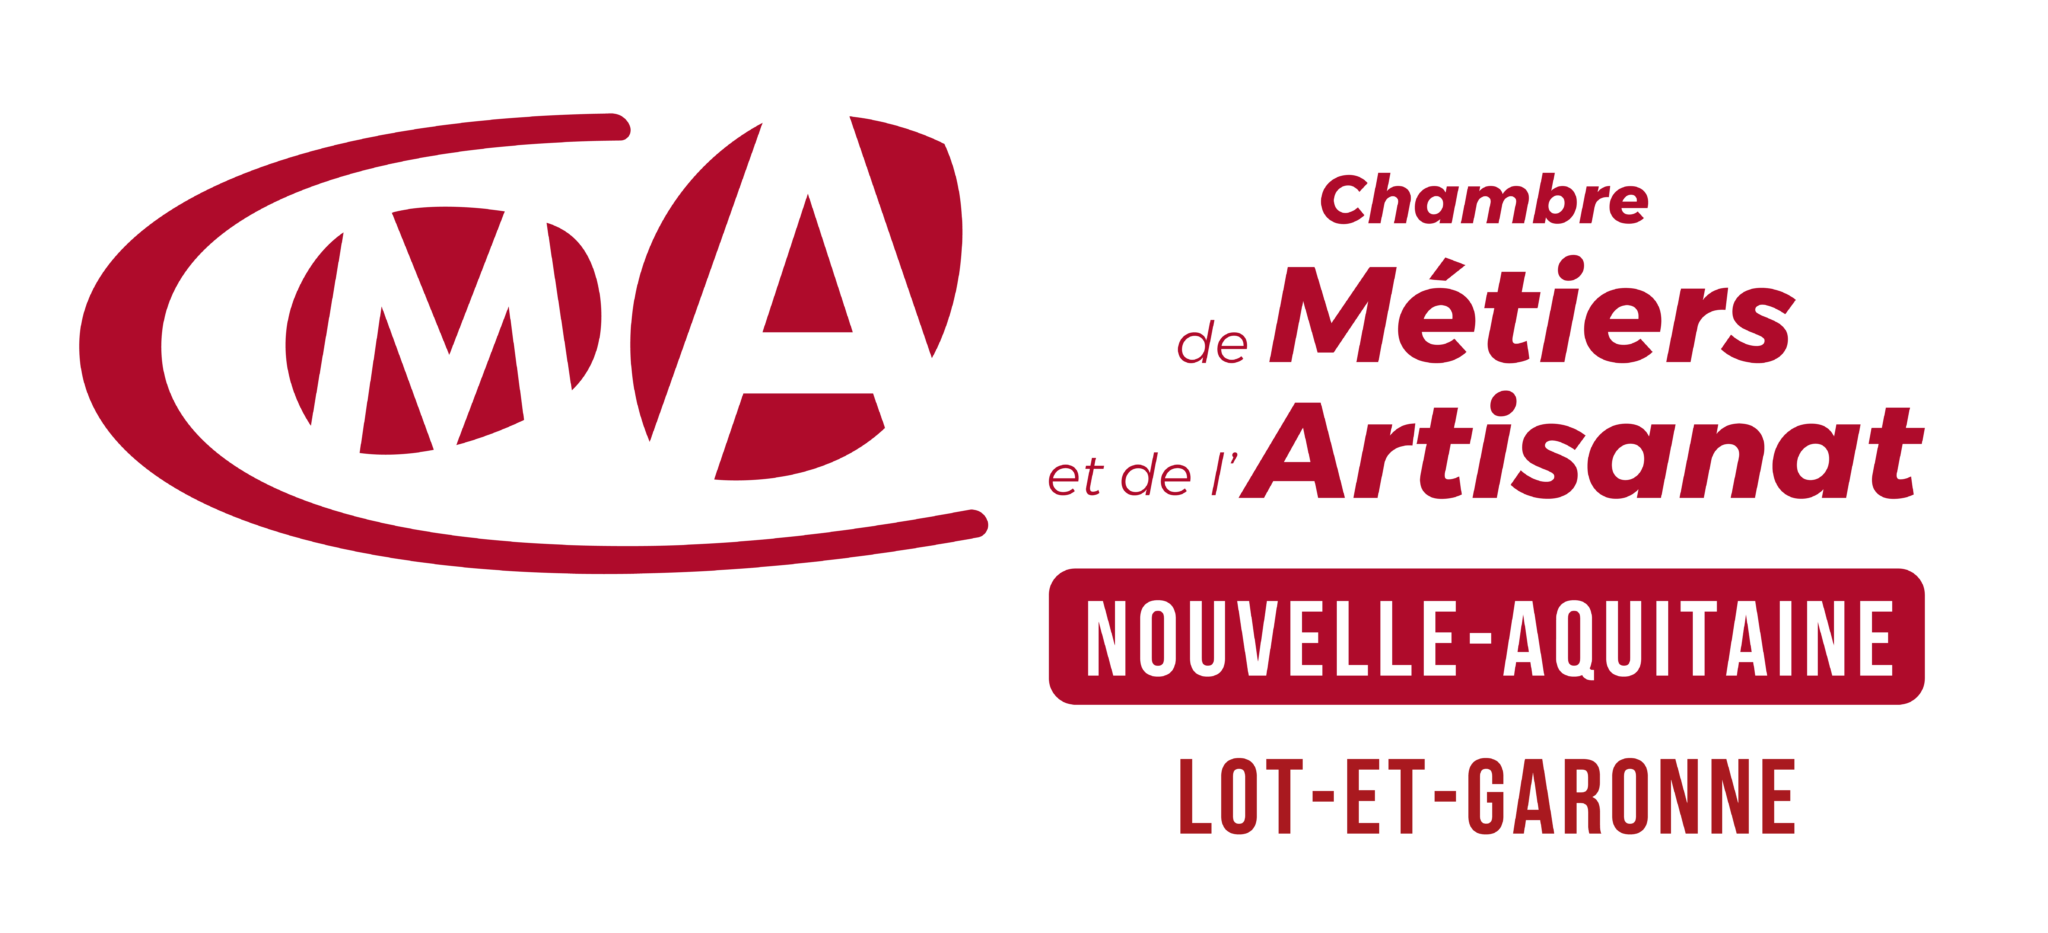 Chambre de Métiers et de l'Artisanat de Lot-et-Garonne